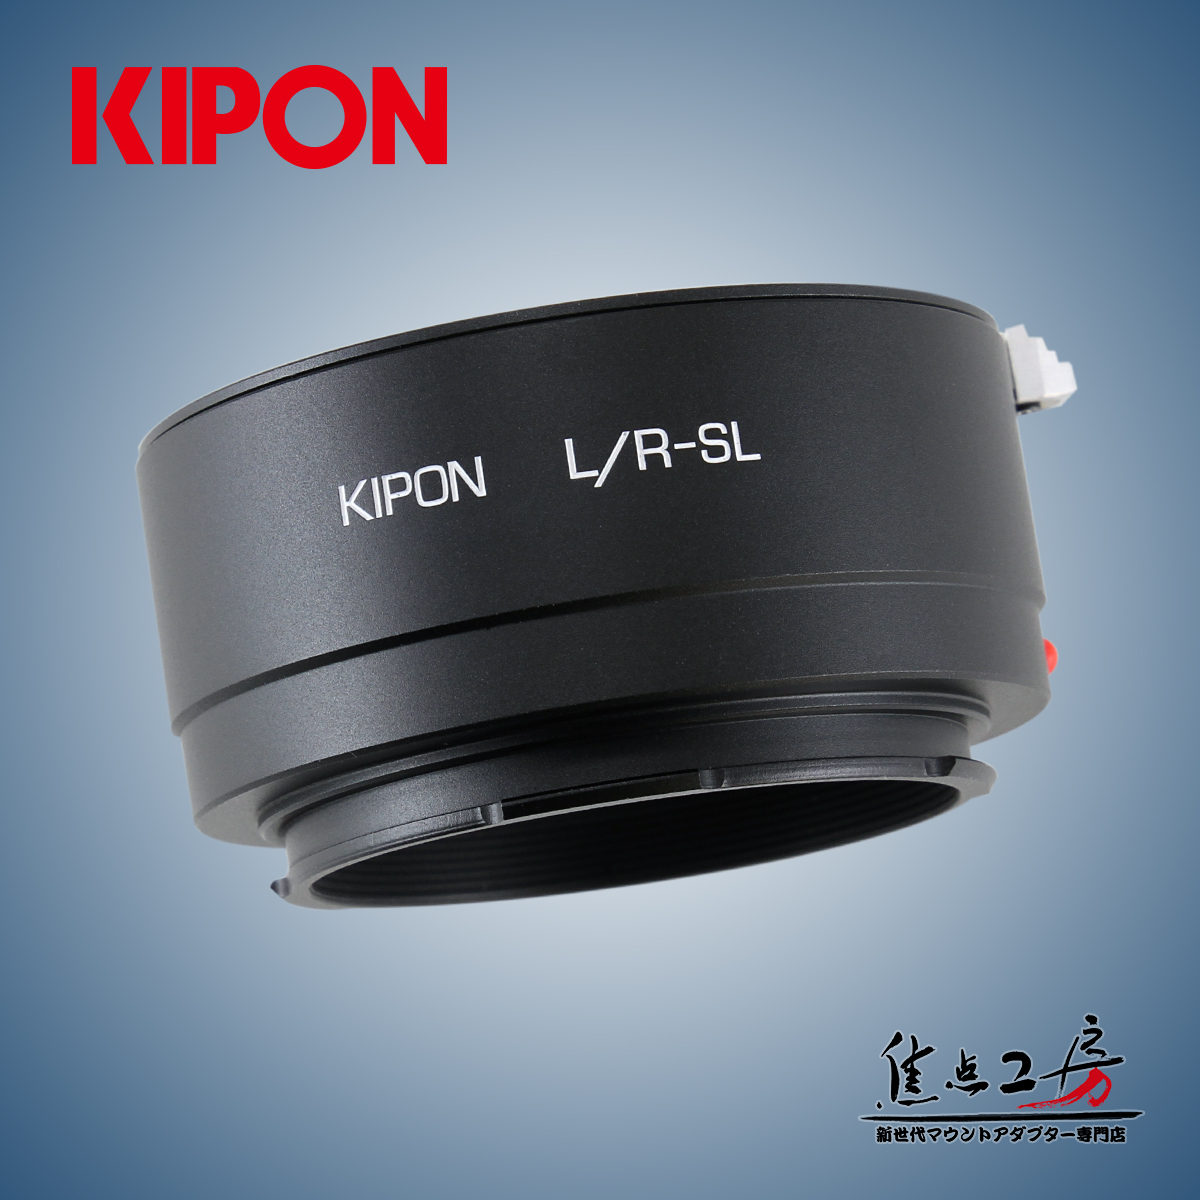 KIPON L/R-SL ライカRマウントレンズ - ライカSLマウントカメラ